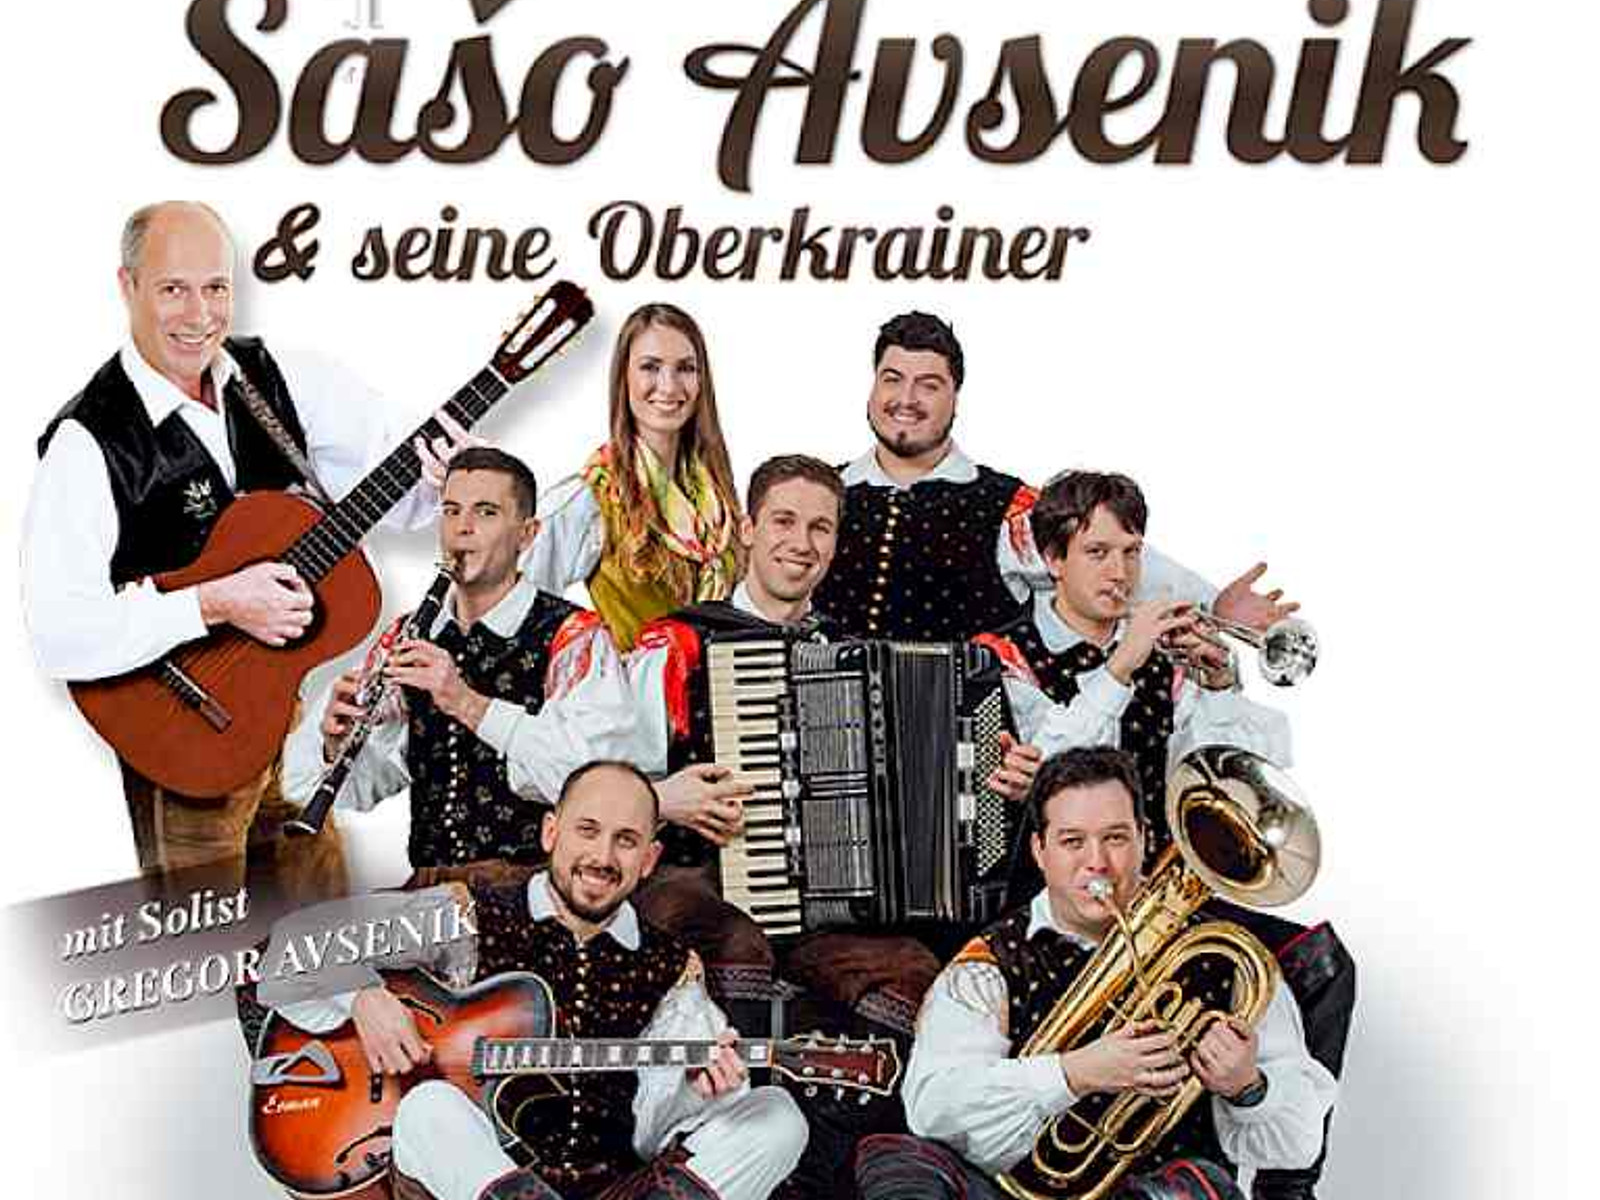 Saso Avenik und seine Oberkrainer